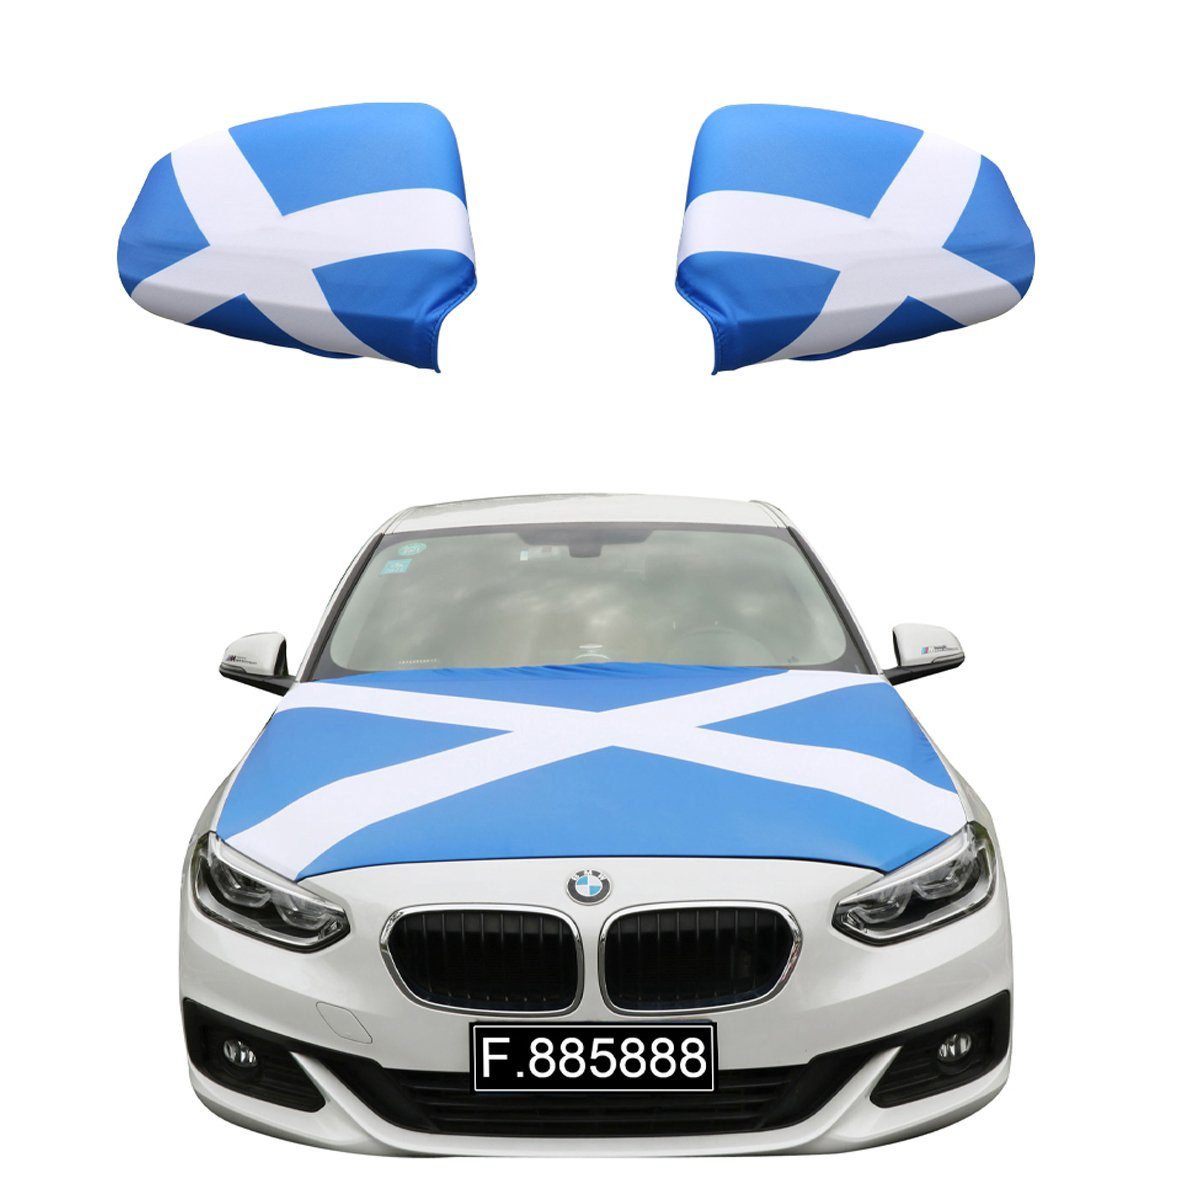 Sonia Originelli Fahne Fanset "Schottland" Scotland Motorhaube Außenspiegel Flagge, für alle gängigen PKW Modelle, Motorhauben Flagge: ca. 115 x 150cm